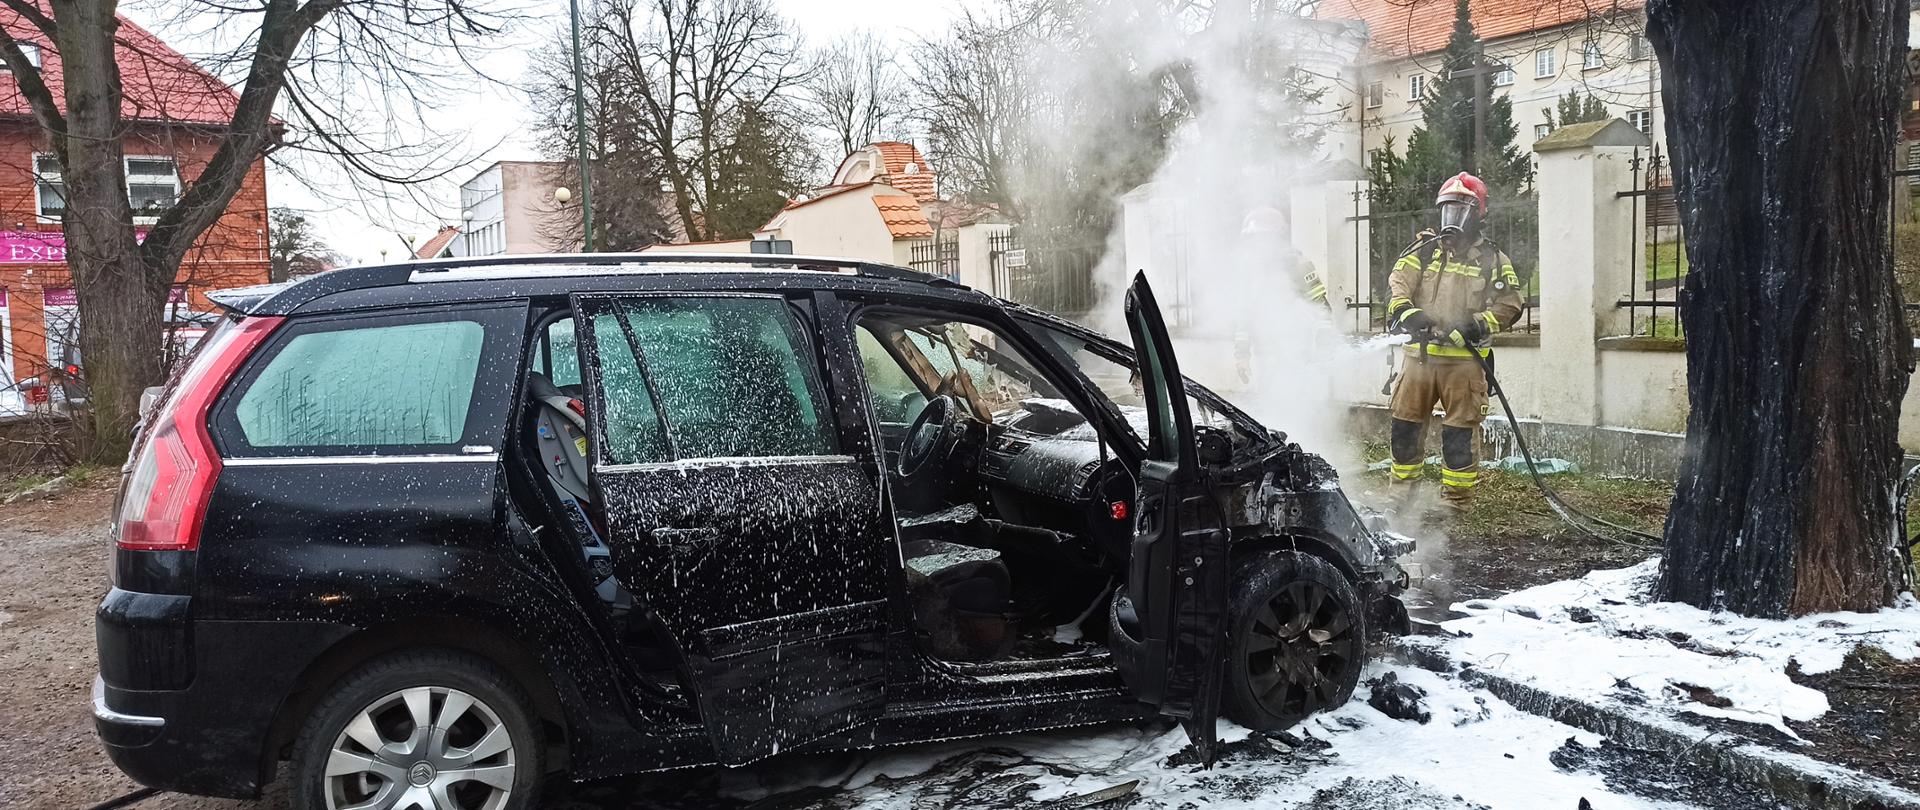 Zdjęcie przedstawia zaparkowany samochód osobowy na parkingu, który uległ zapaleniu. Pożarem objęta komora silnika i deska rozdzielcza. Strażak podaje środek gaśniczy na palący się pojazd. 